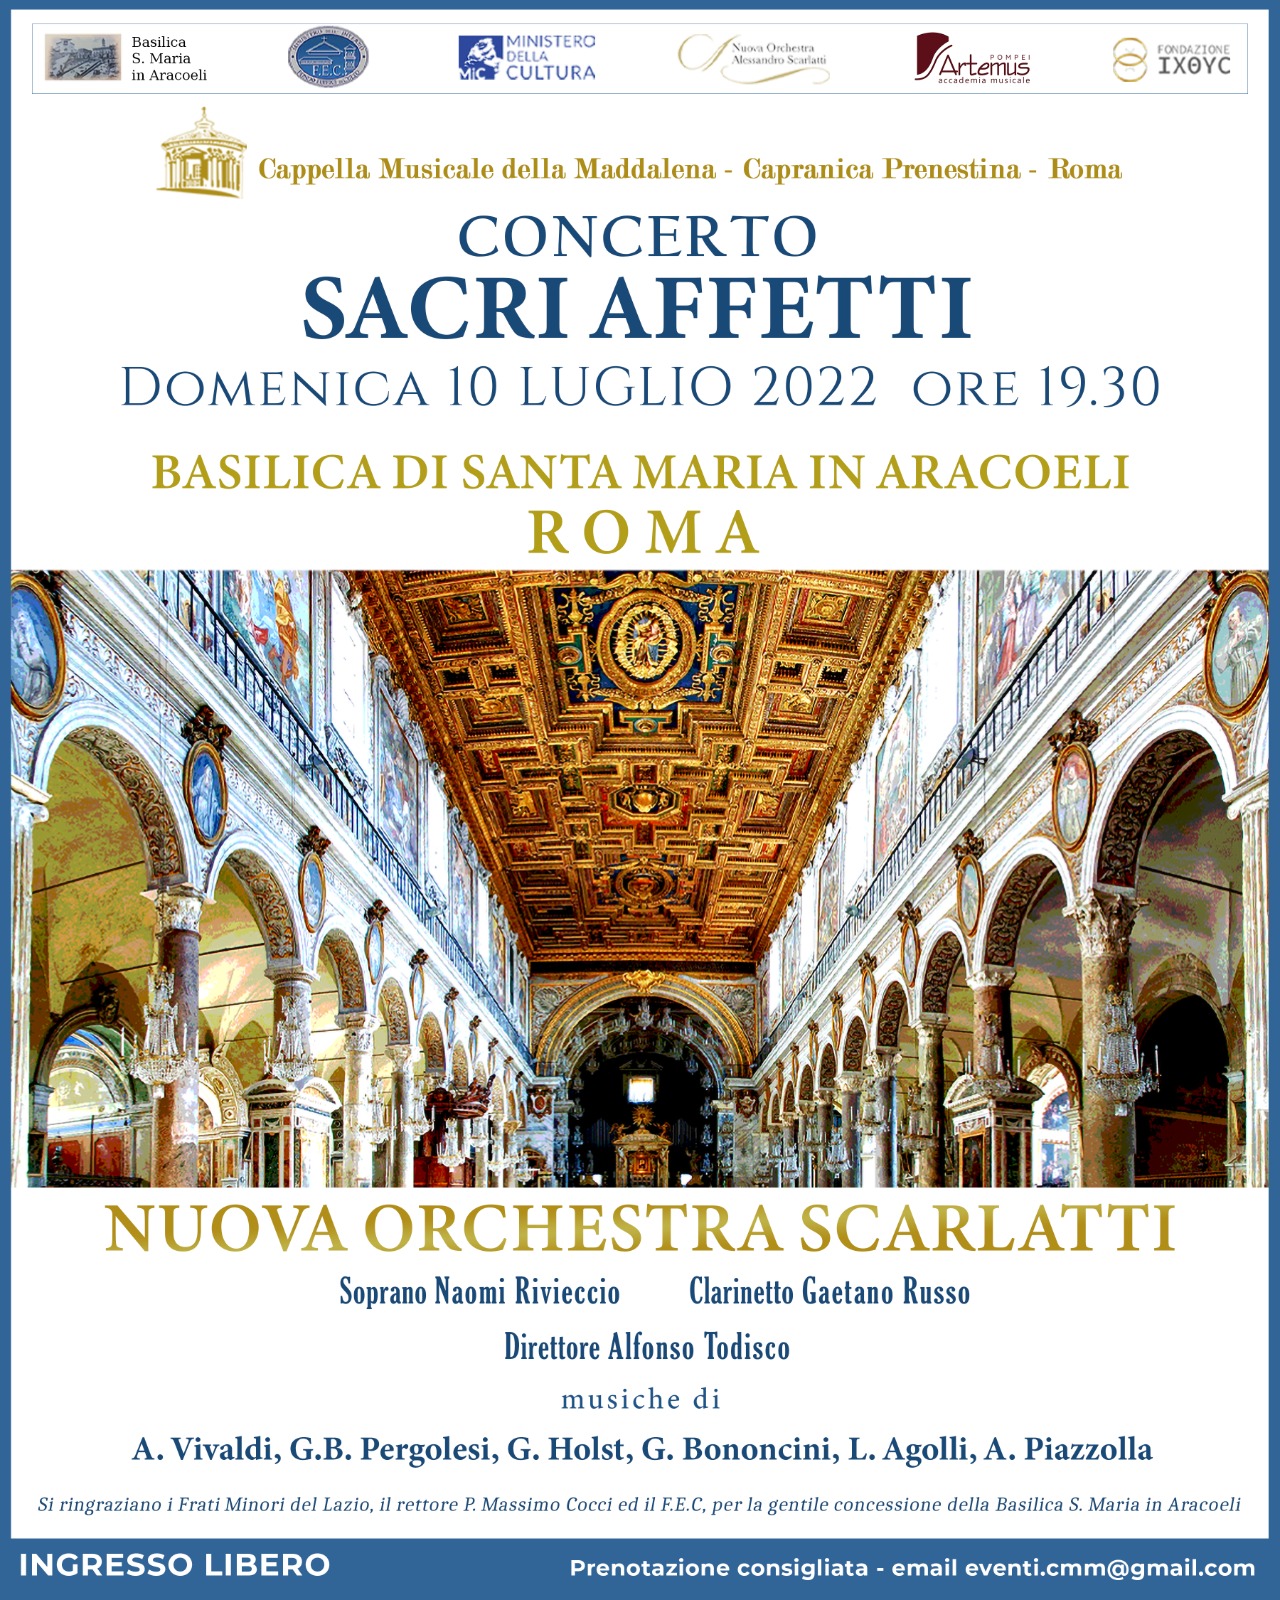 https://www.agenziaeventi.org/immagini_news/3031/domenica-10-luglio-a-roma-il-concerto-sacri-affetti-promosso-dalla-cappella-musicale-della-maddalena-di-capranica-prenestina-3031.jpg